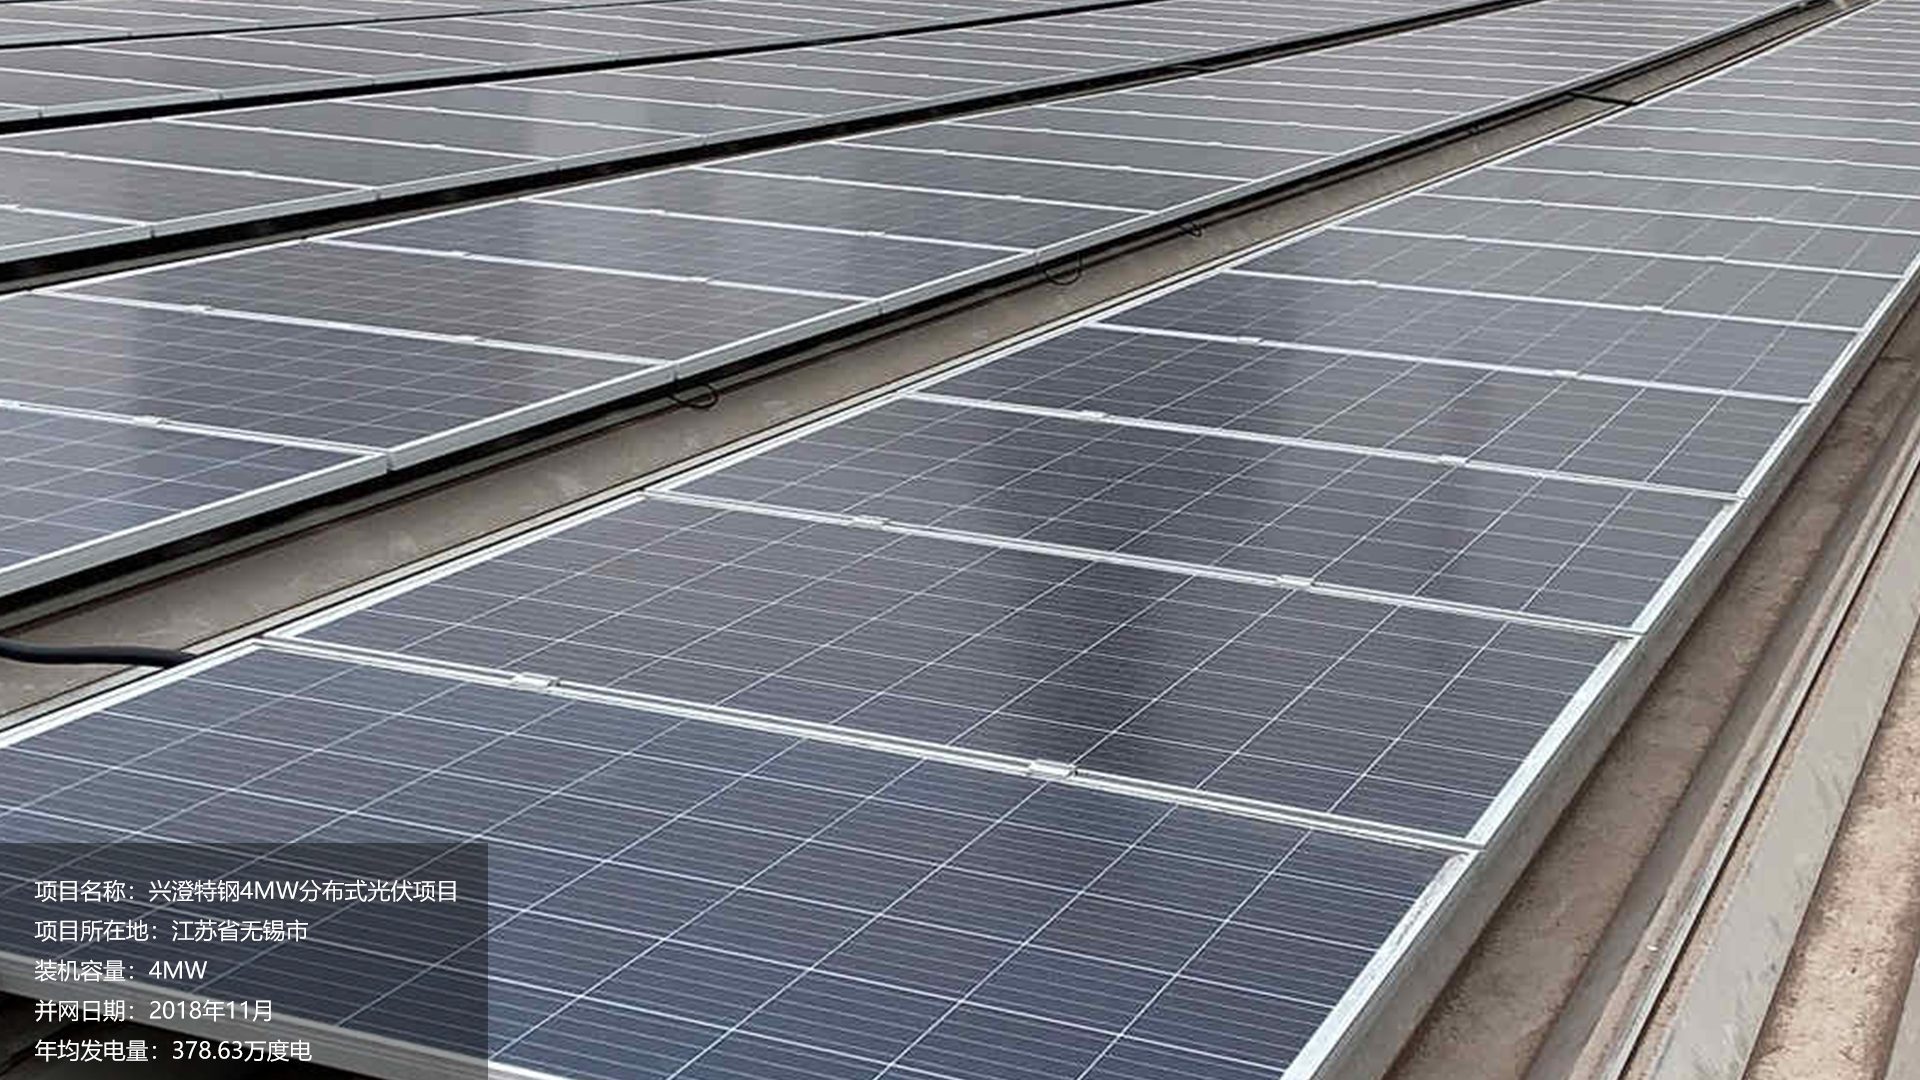 兴澄特钢项目总装机容量4MW，项目位于江苏省无锡市，于2018年11月并网发电，年均发电量约380万度。